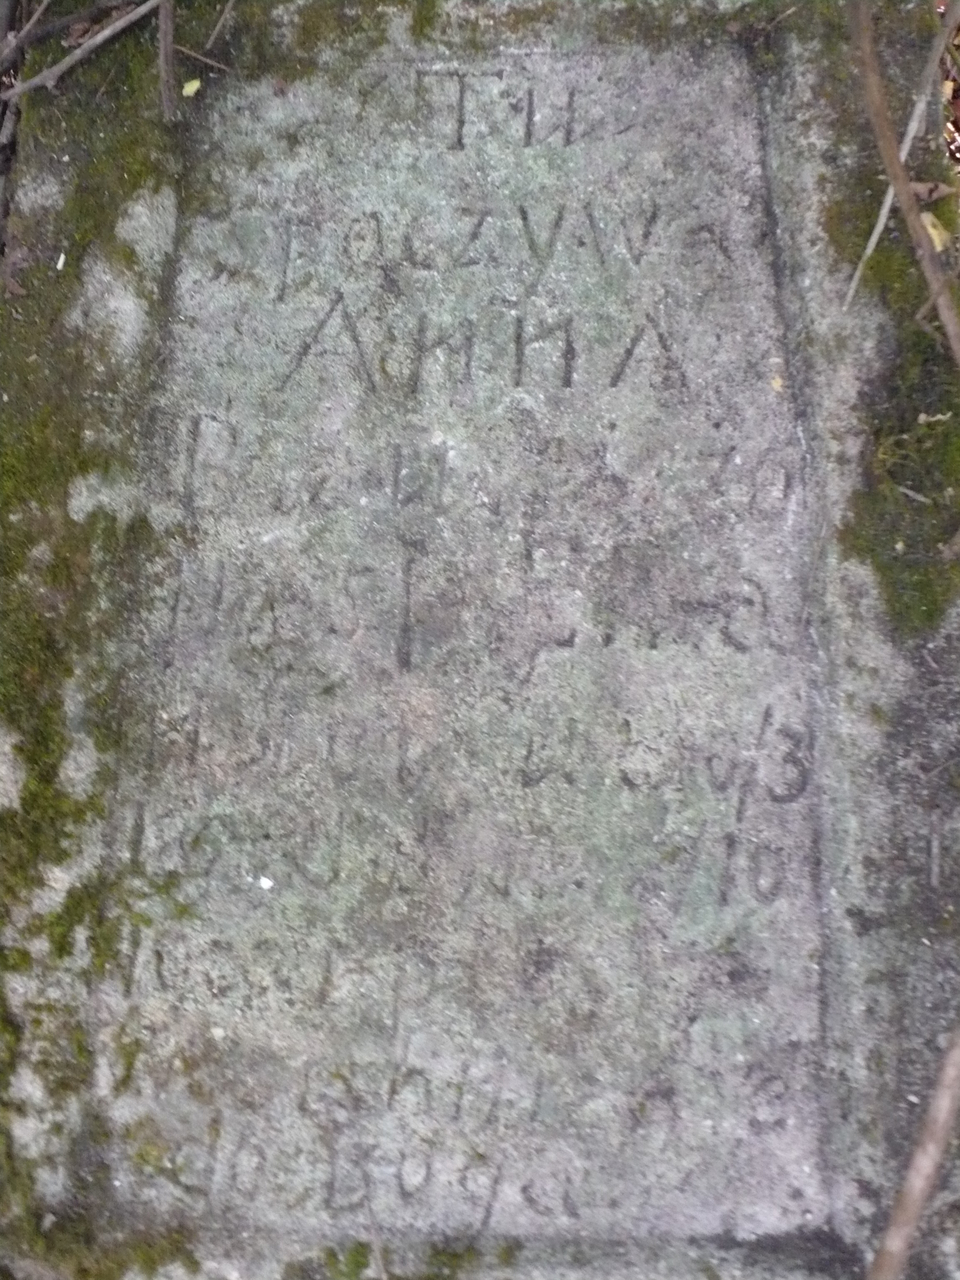 Tombstone of Anna Biau[...]cza, Czerwonogrod (Nyrkiv) cemetery, state from 2005